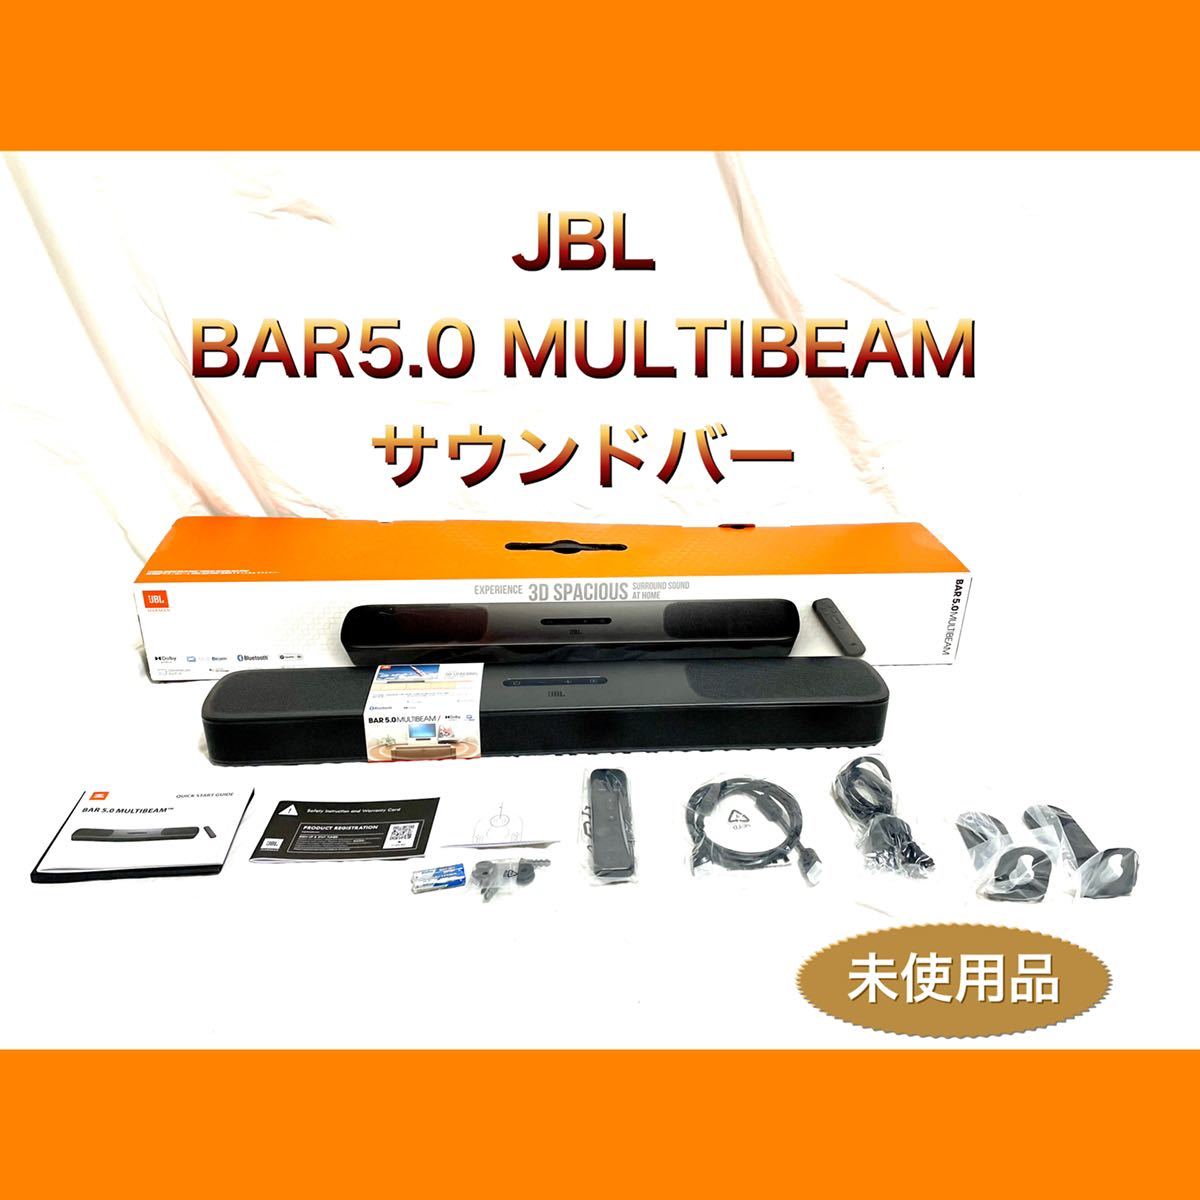 JBL BAR5.0 MULTIBEAM サウンドバー 【国内正規品】 delsikagroup.com